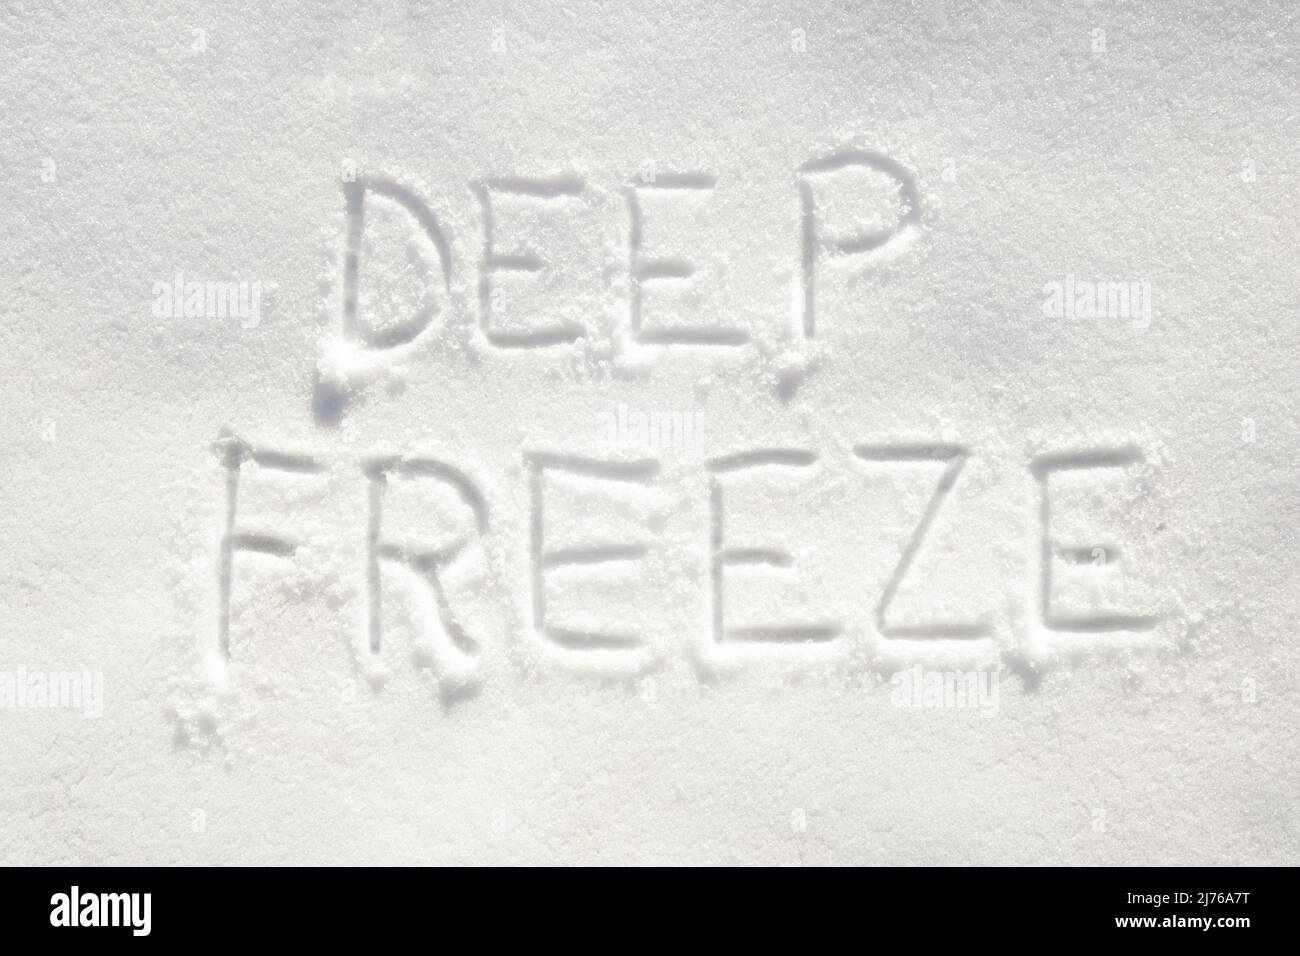 Texte « gel de la chute » écrit dans la neige; concept de temps très froid arrivant Banque D'Images